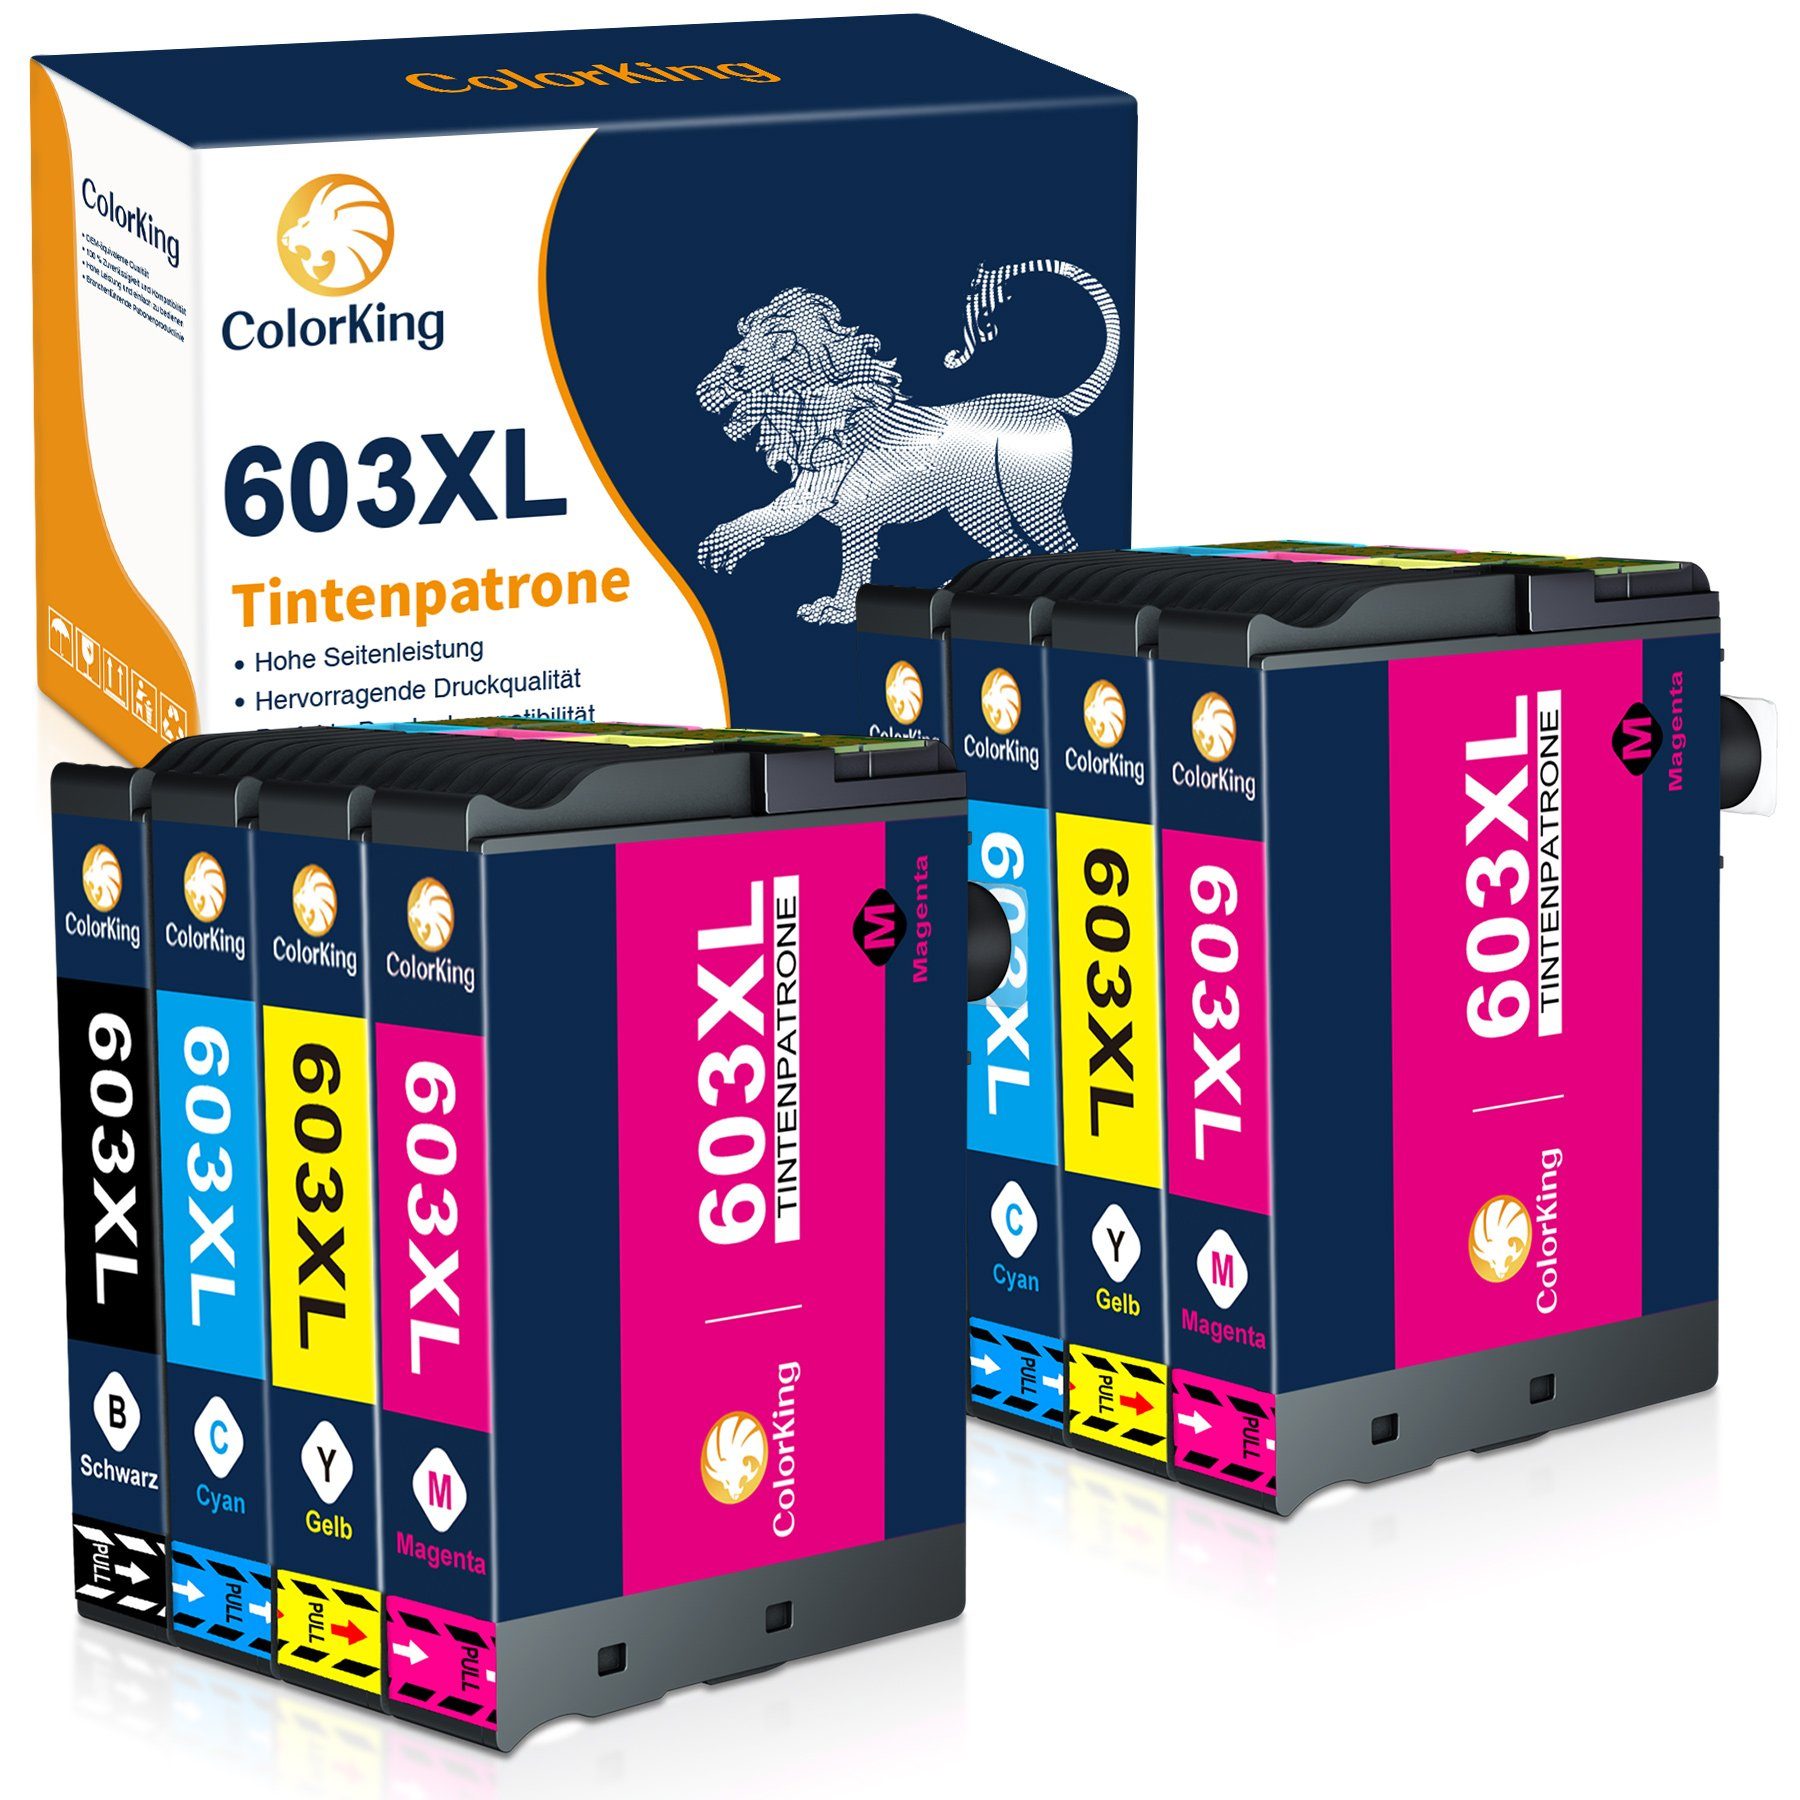 ColorKing 603XL multipack Tintenpatrone (Ersatz für Workforce WF-2835 2850 2830 2810) 2* Schwarz, 2* Cyan, 2* Magenta, 2* Gelb (8er Set)